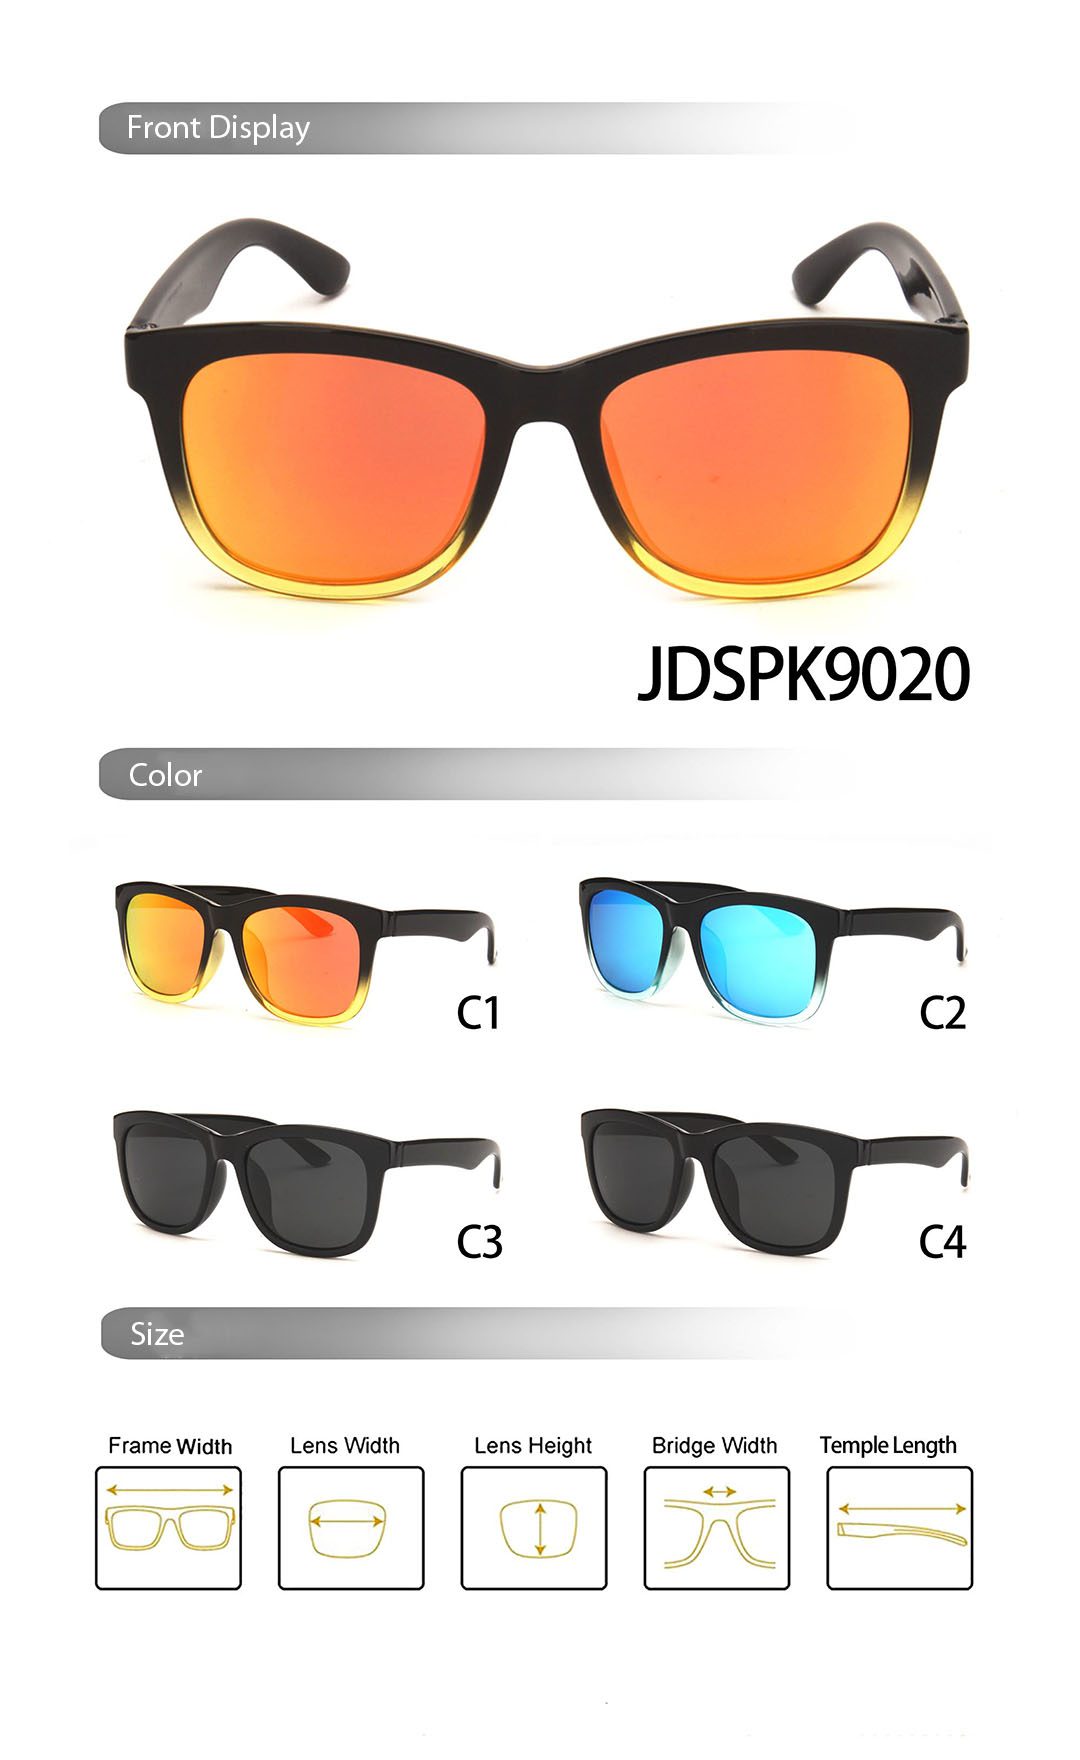 Sunglasses JDSPK9020 Different Color Display